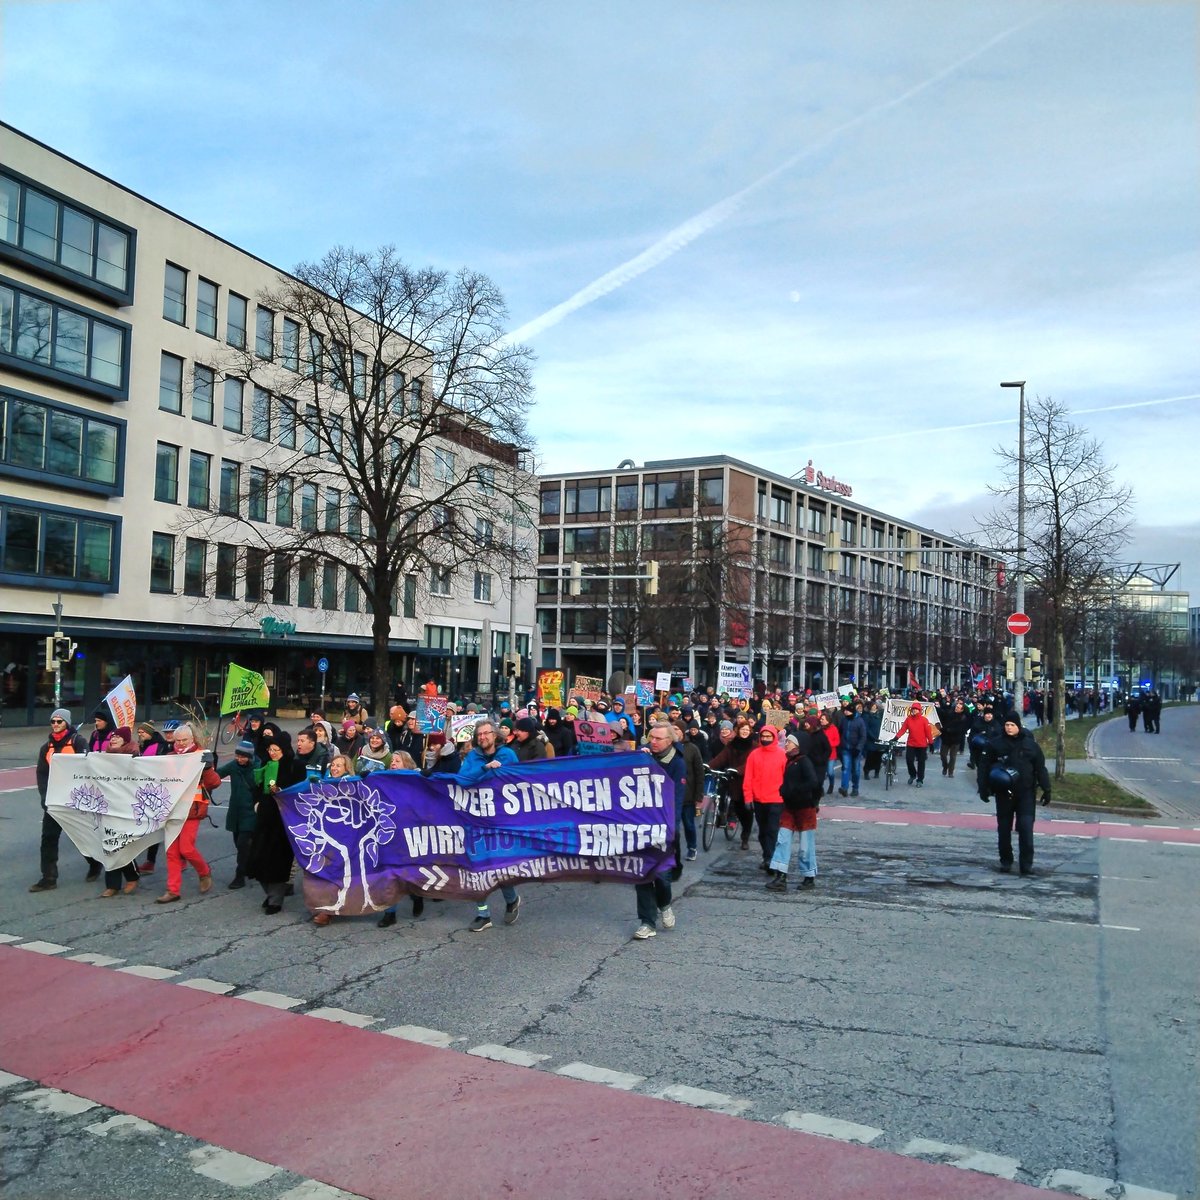 Durch Hannover zieht zur Stunde eine wütende und laute Demo.
Wir vergessen nicht, wer für die Polizeigewalt bei der #Leinemasch-Räumung verantwortlich ist.

Hass, Hass, Hass wie noch nie
auf die Autoindustrie!